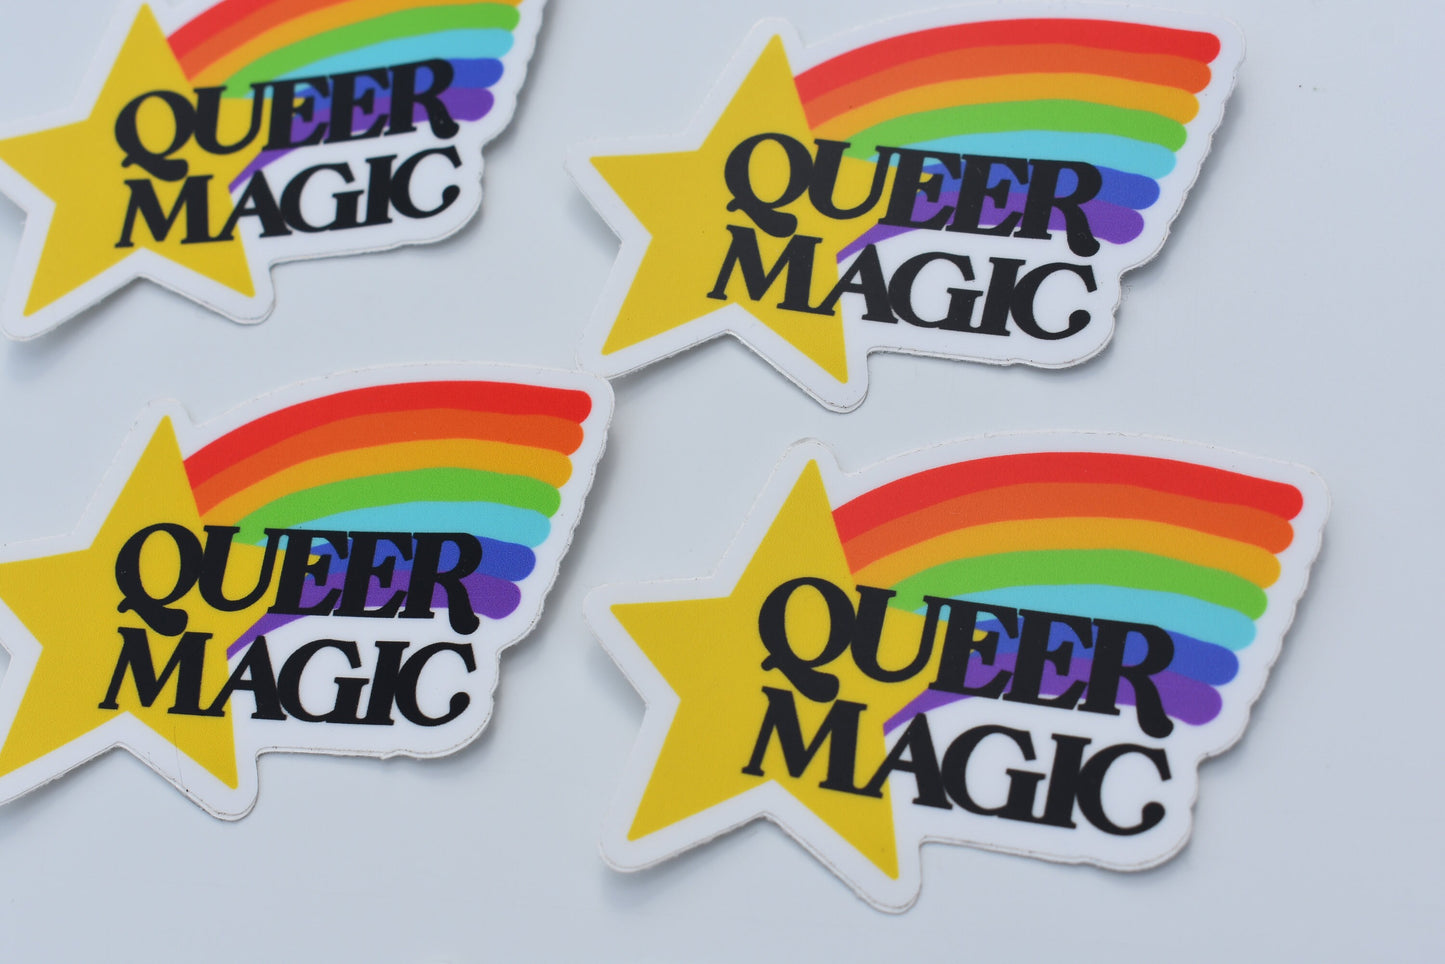 Queer Magic Sticker, Vinyl Laptop Waterbottle Sticker, LGBTQ Pride Sticker, Rainbow Sticker, Gay Pride